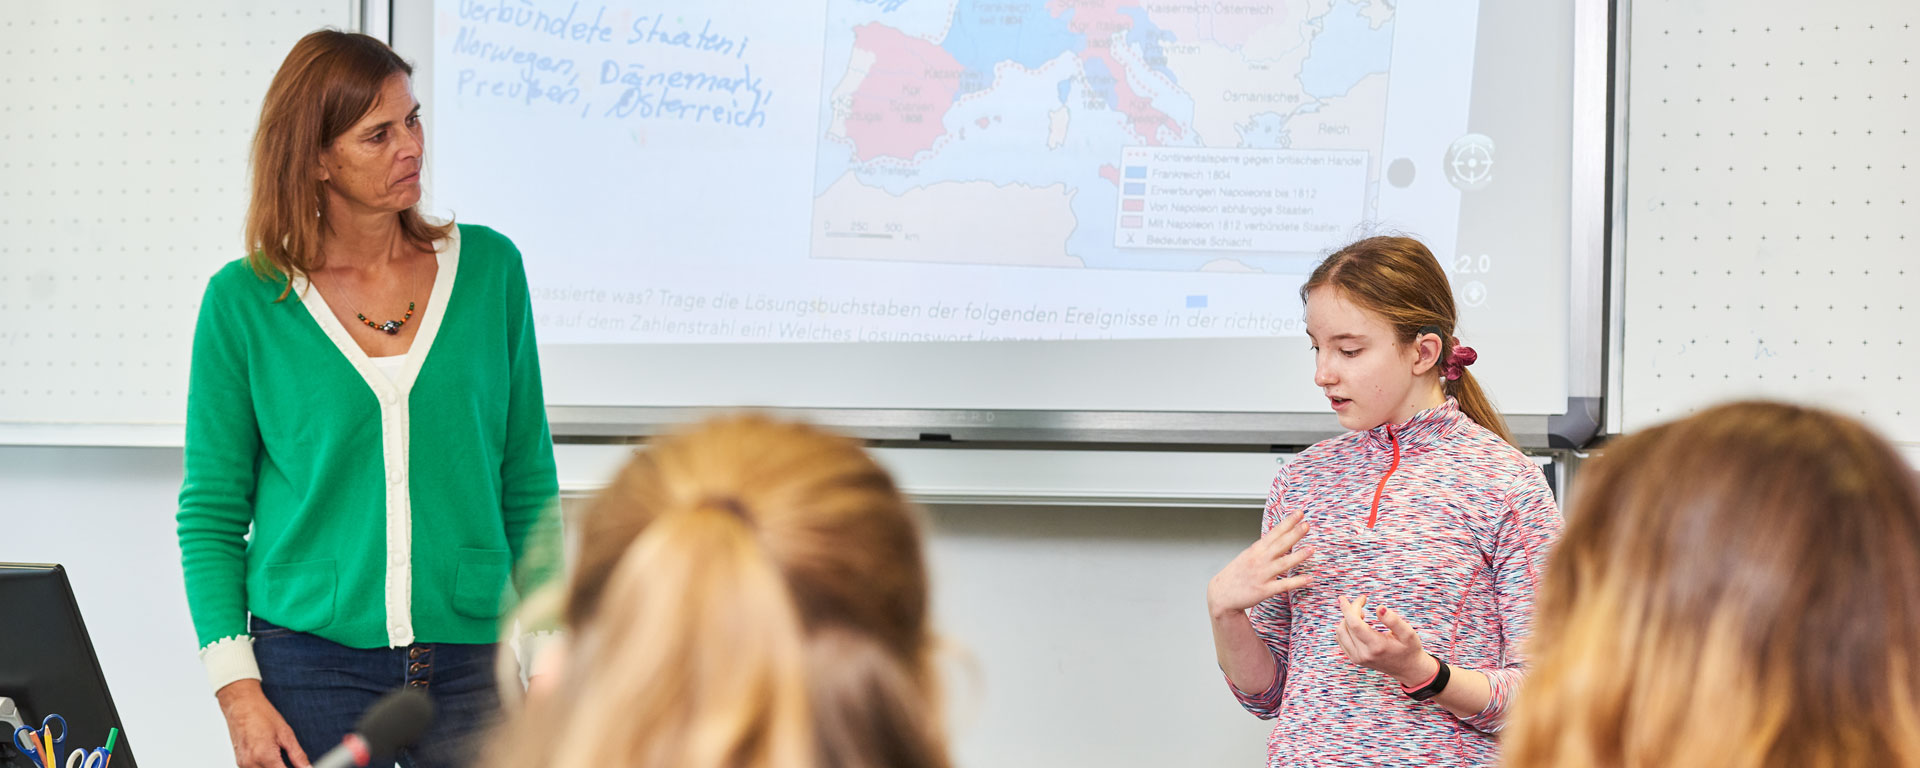 Eine Schülerin der Samuel-Heinicke-Realschule erklärt vor der Klasse etwas in Gebärdensprache